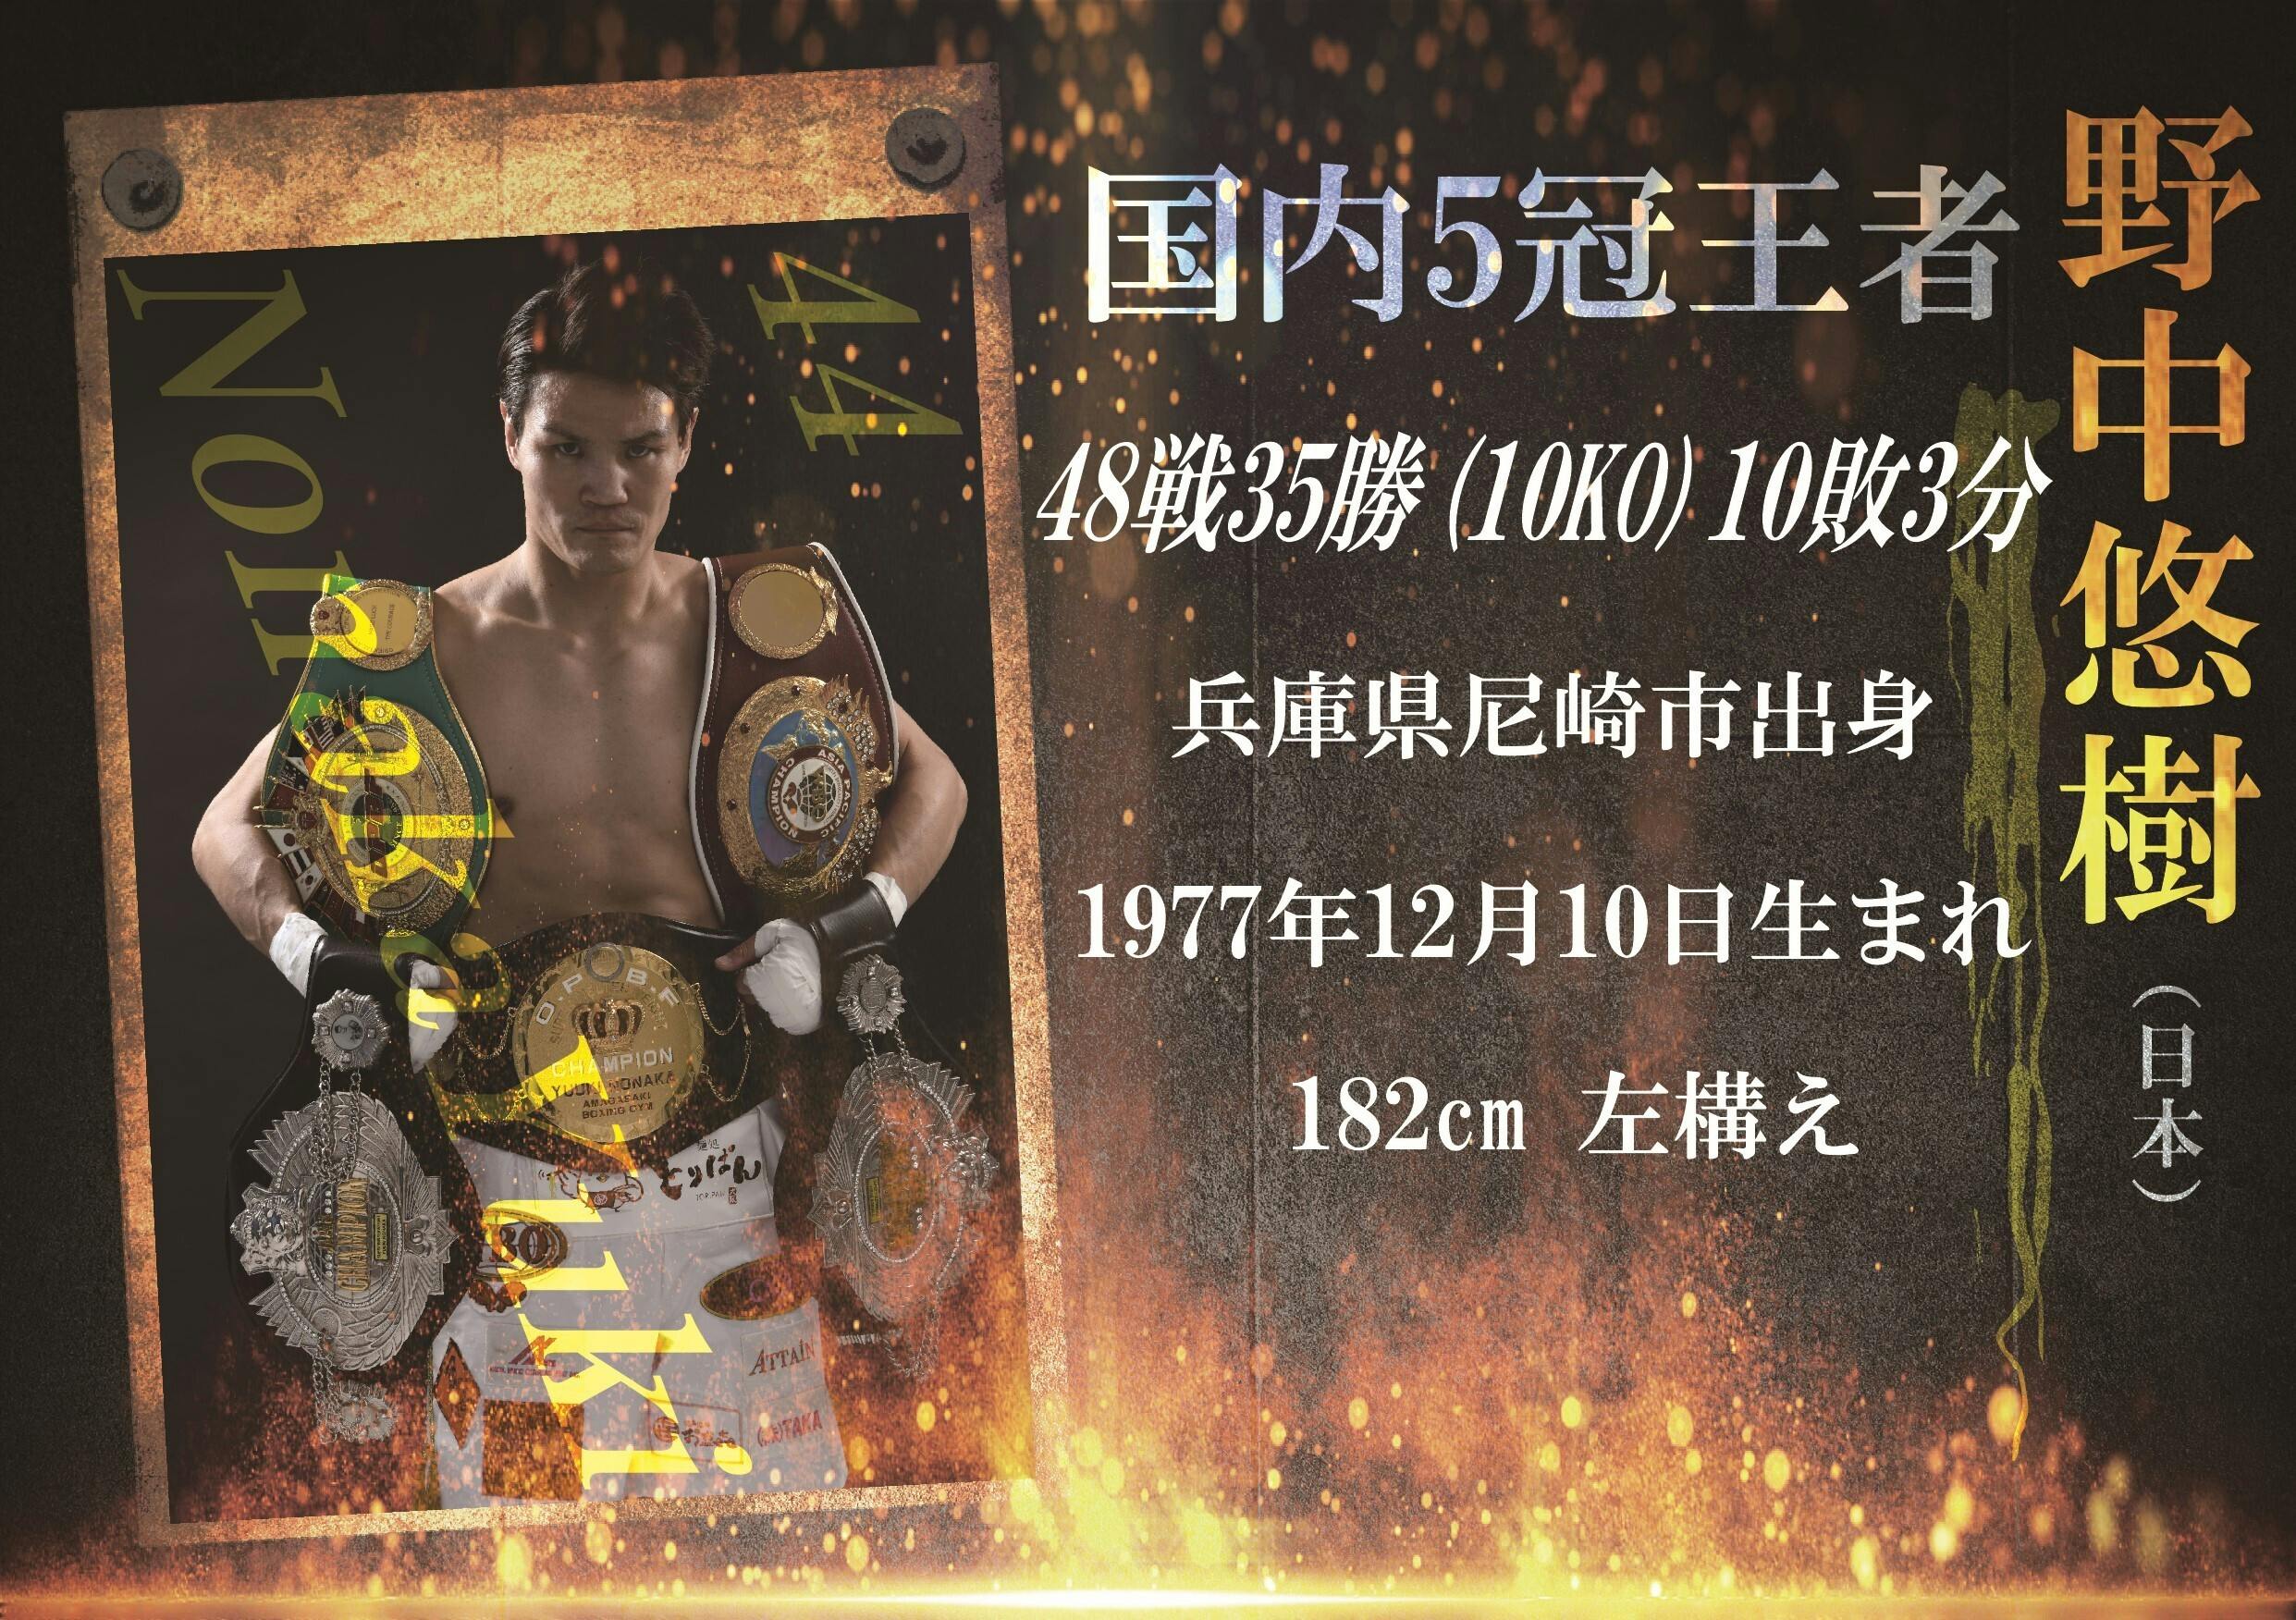 ボクシングボクシング世界チャンピオン、井岡弘樹、井岡一翔サイン色紙